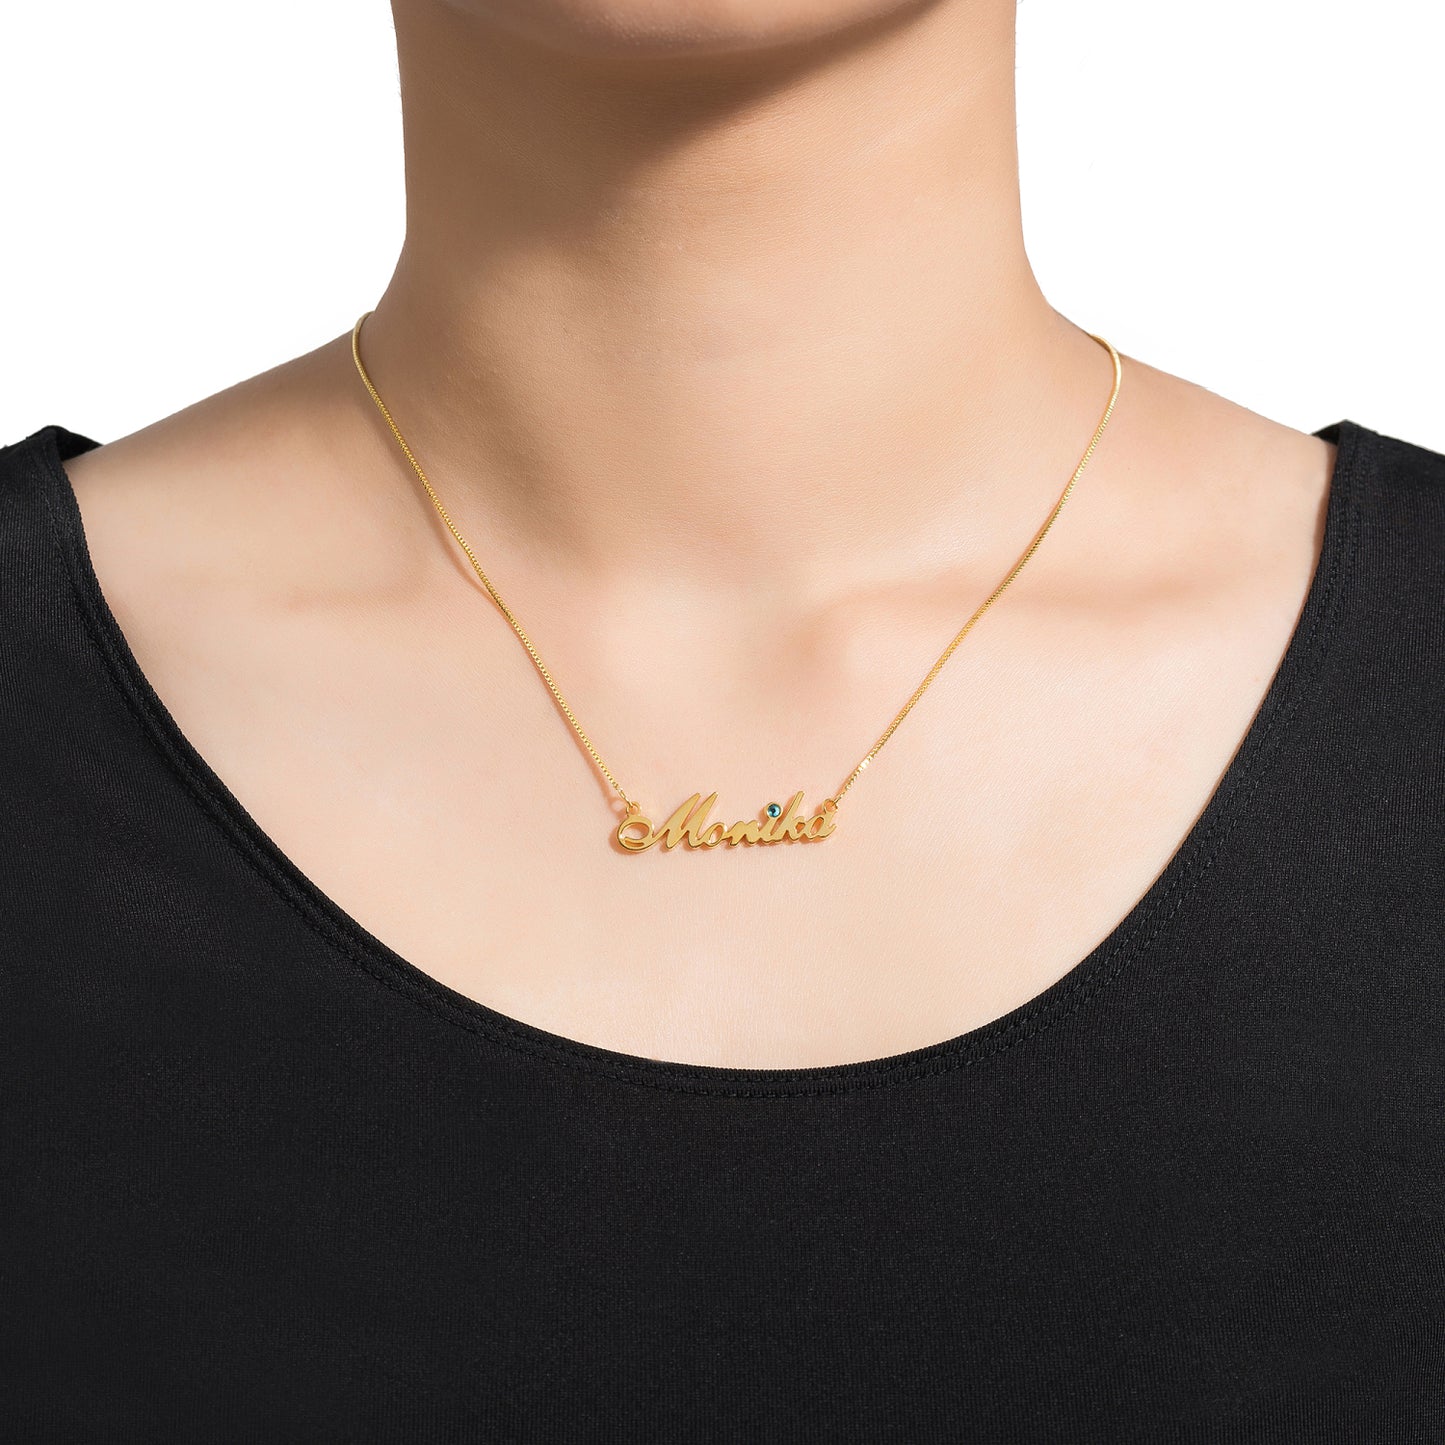 Noble Elegant Custom Name Necklace